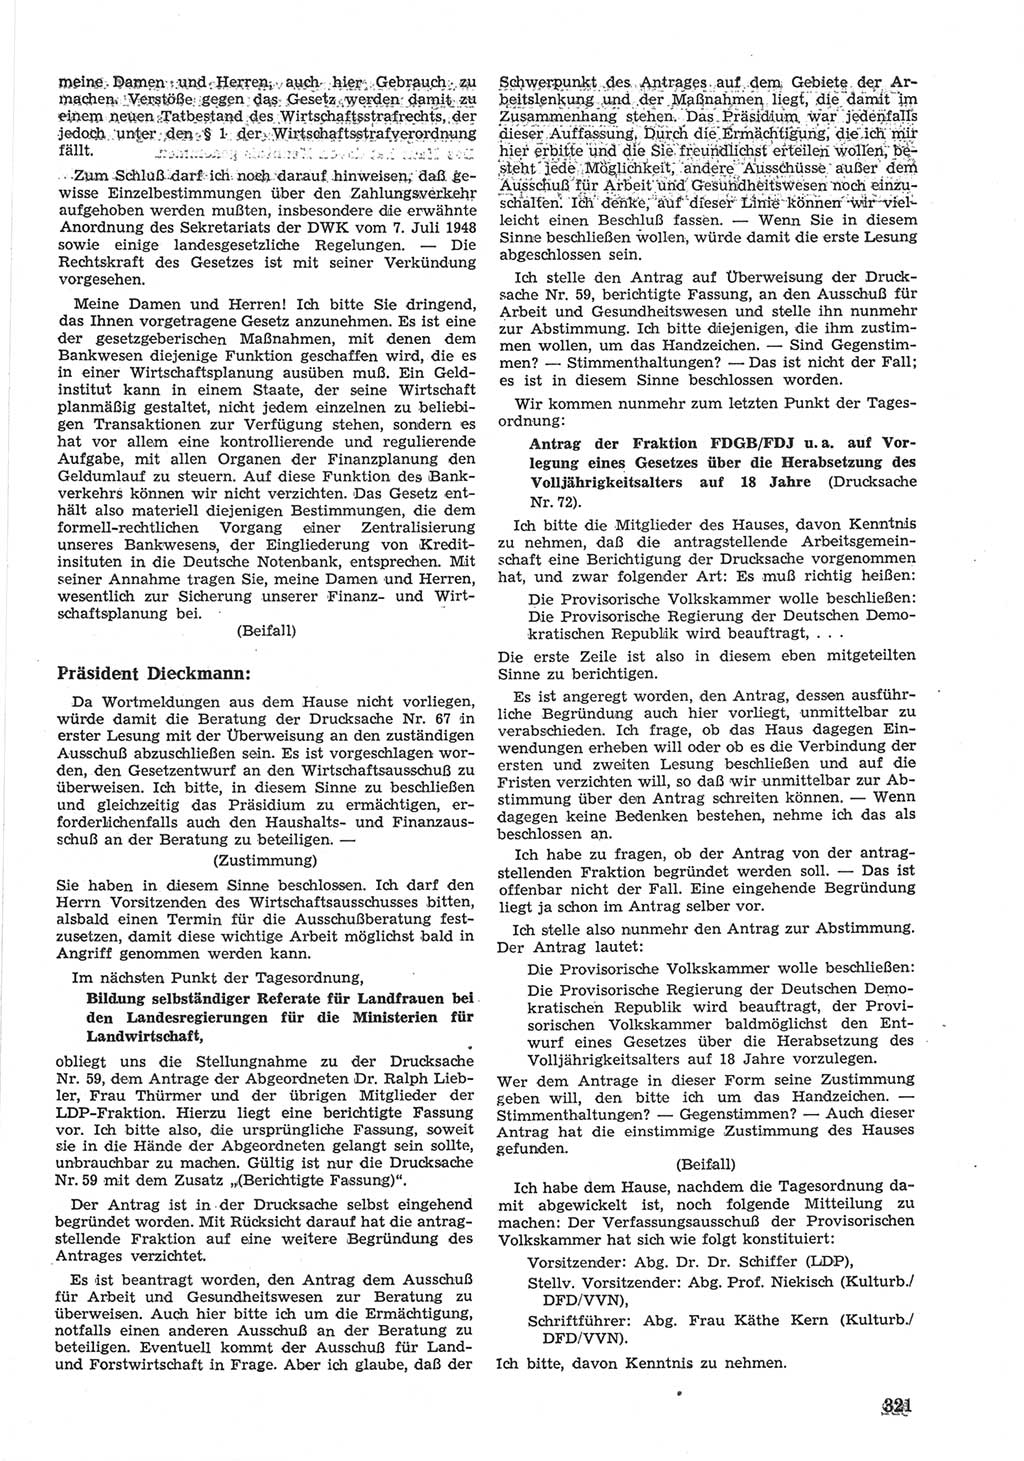 Provisorische Volkskammer (VK) der Deutschen Demokratischen Republik (DDR) 1949-1950, Dokument 335 (Prov. VK DDR 1949-1950, Dok. 335)